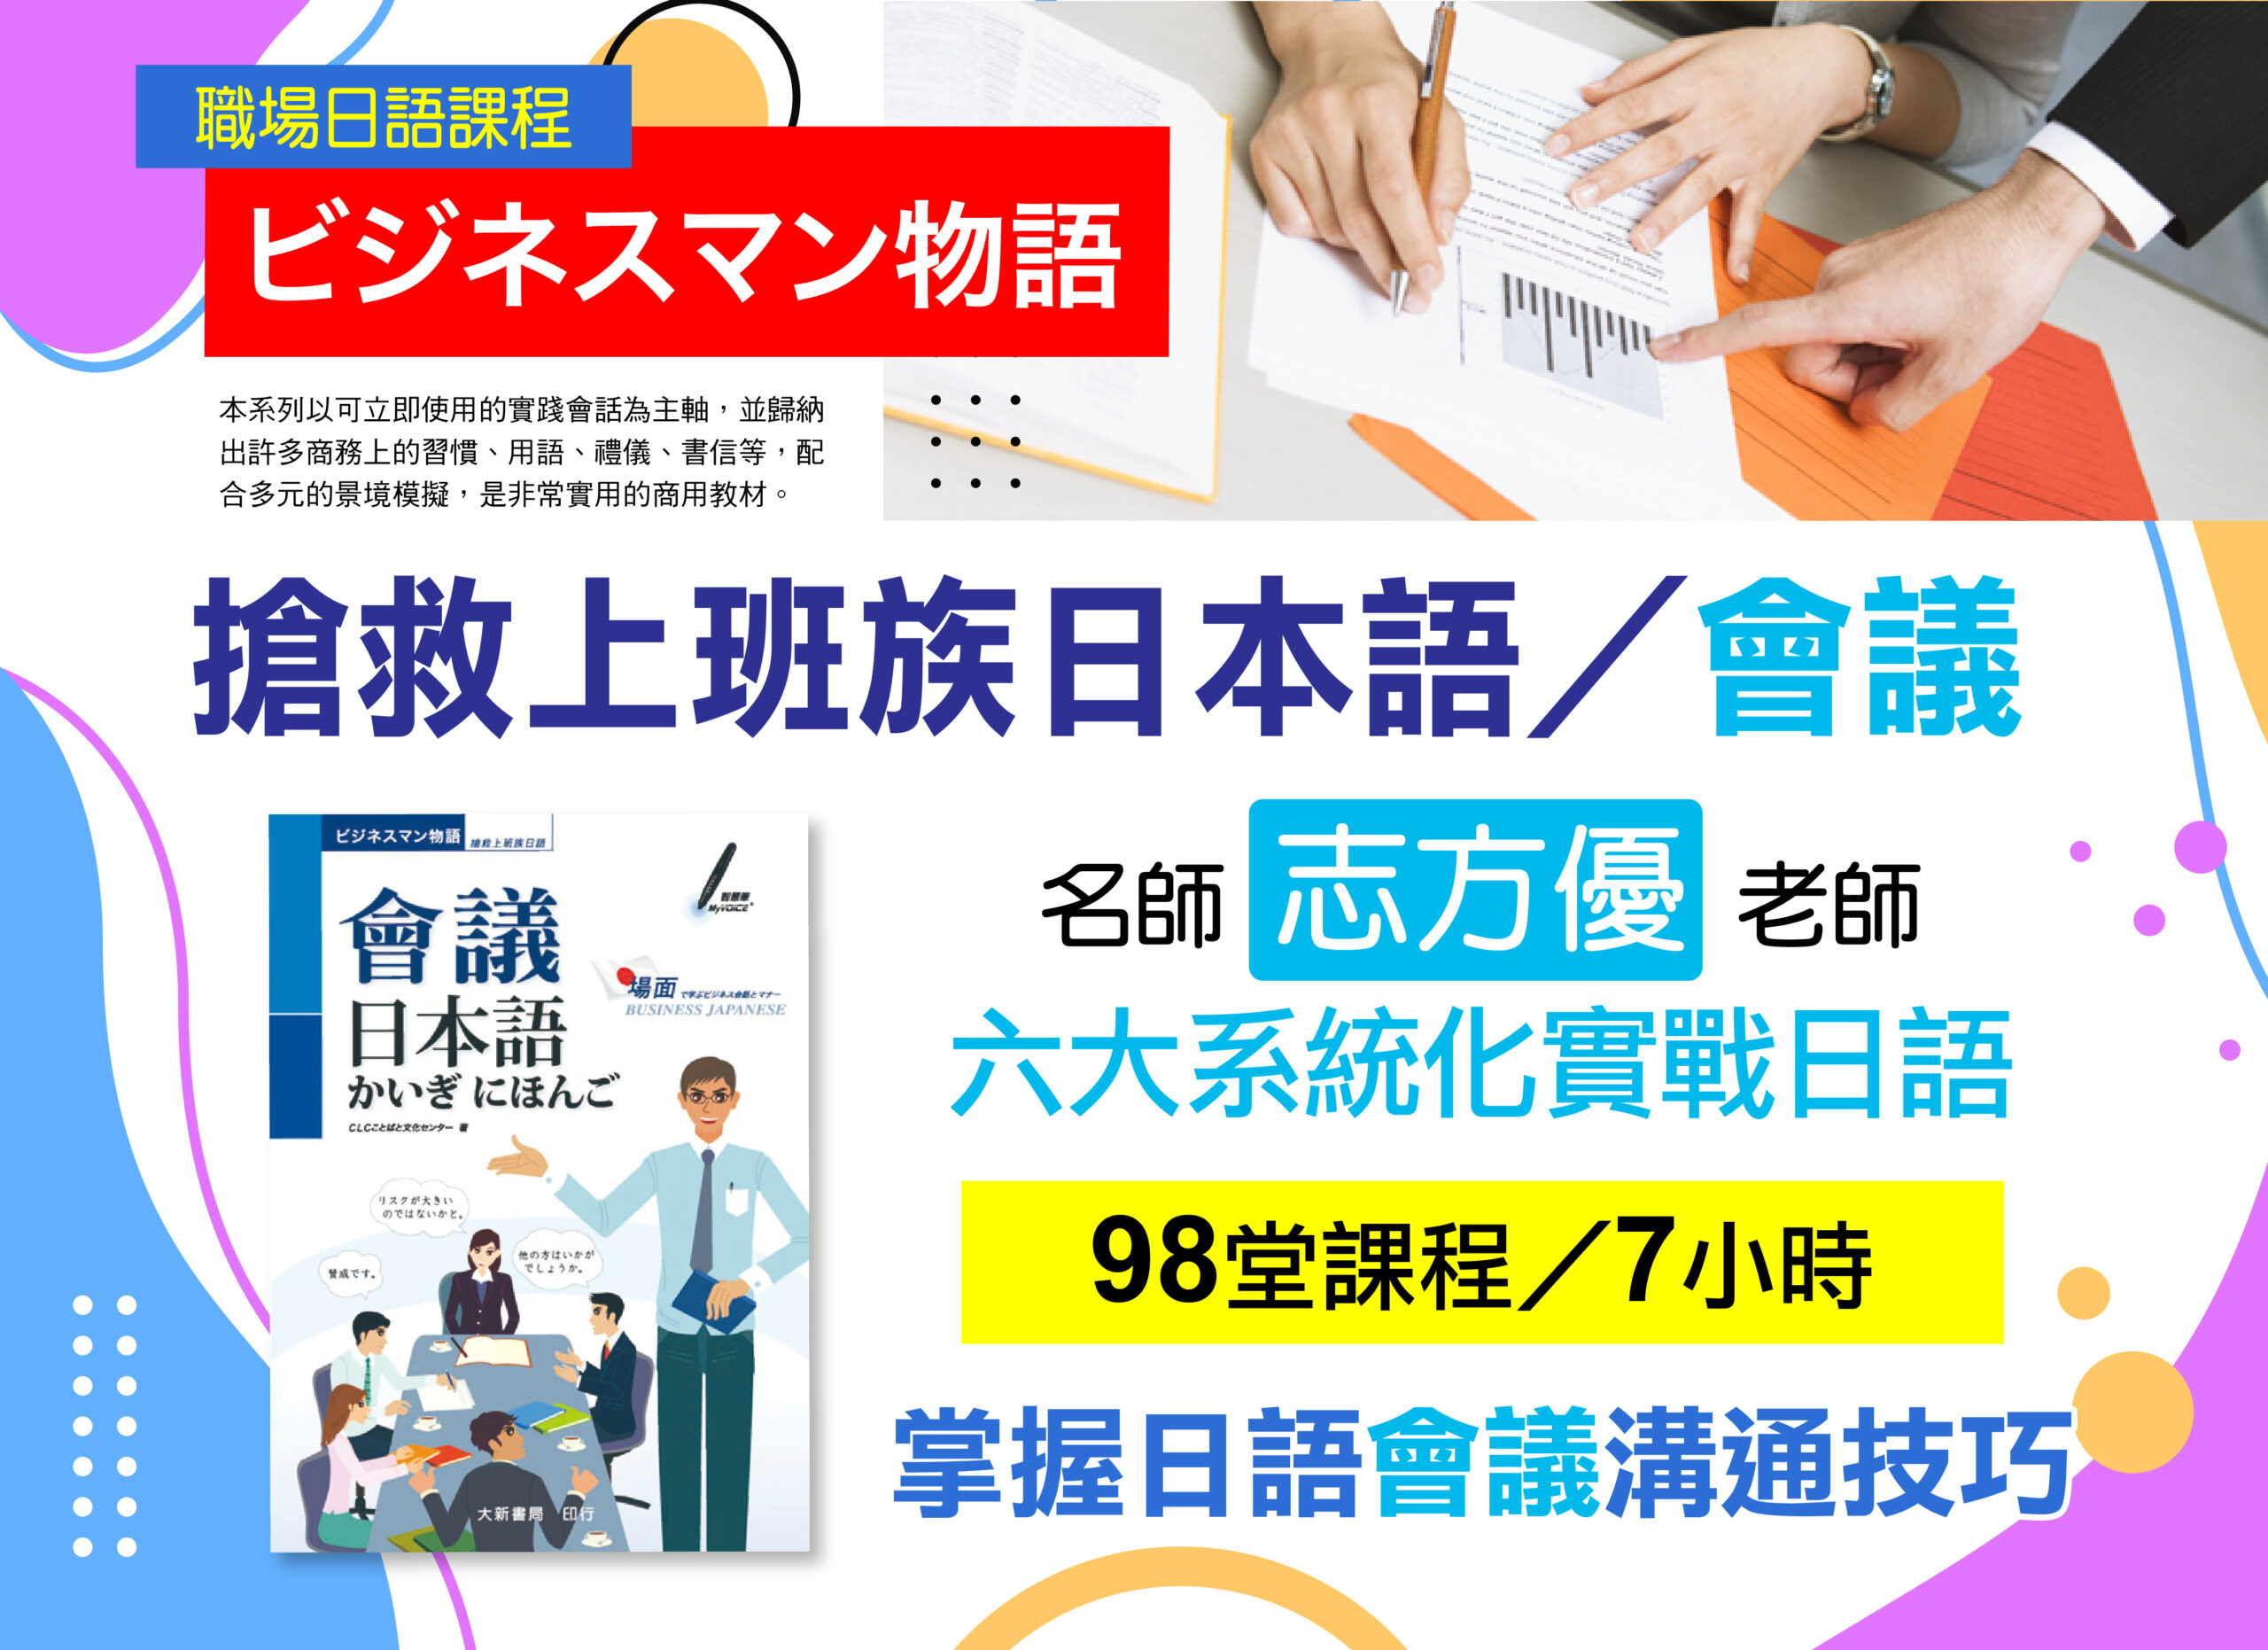 《搶救上班族日本語-會議》-職場日語課程